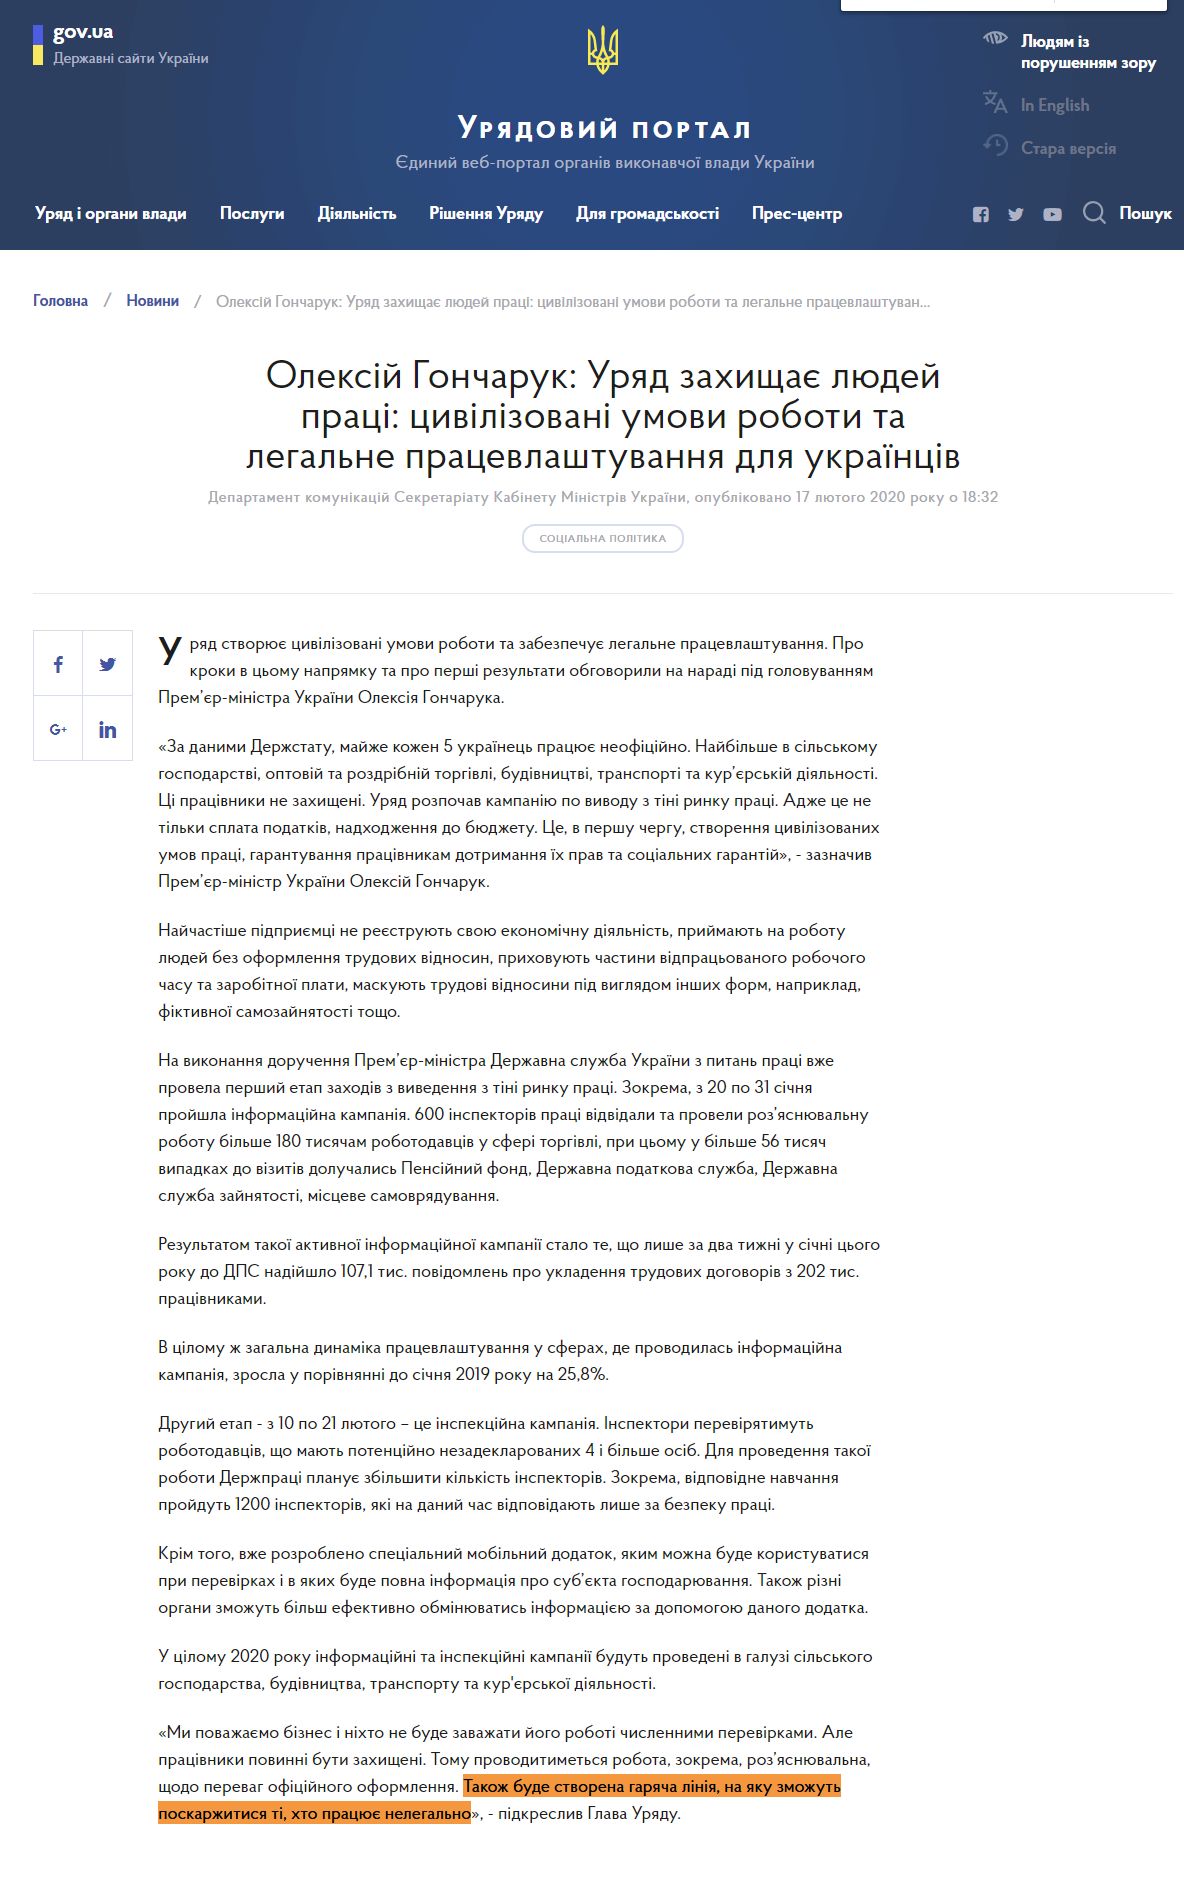 https://www.kmu.gov.ua/news/oleksij-goncharuk-uryad-zahishchaye-lyudej-praci-civilizovani-umovi-roboti-ta-legalne-pracevlashtuvannya-dlya-ukrayinciv